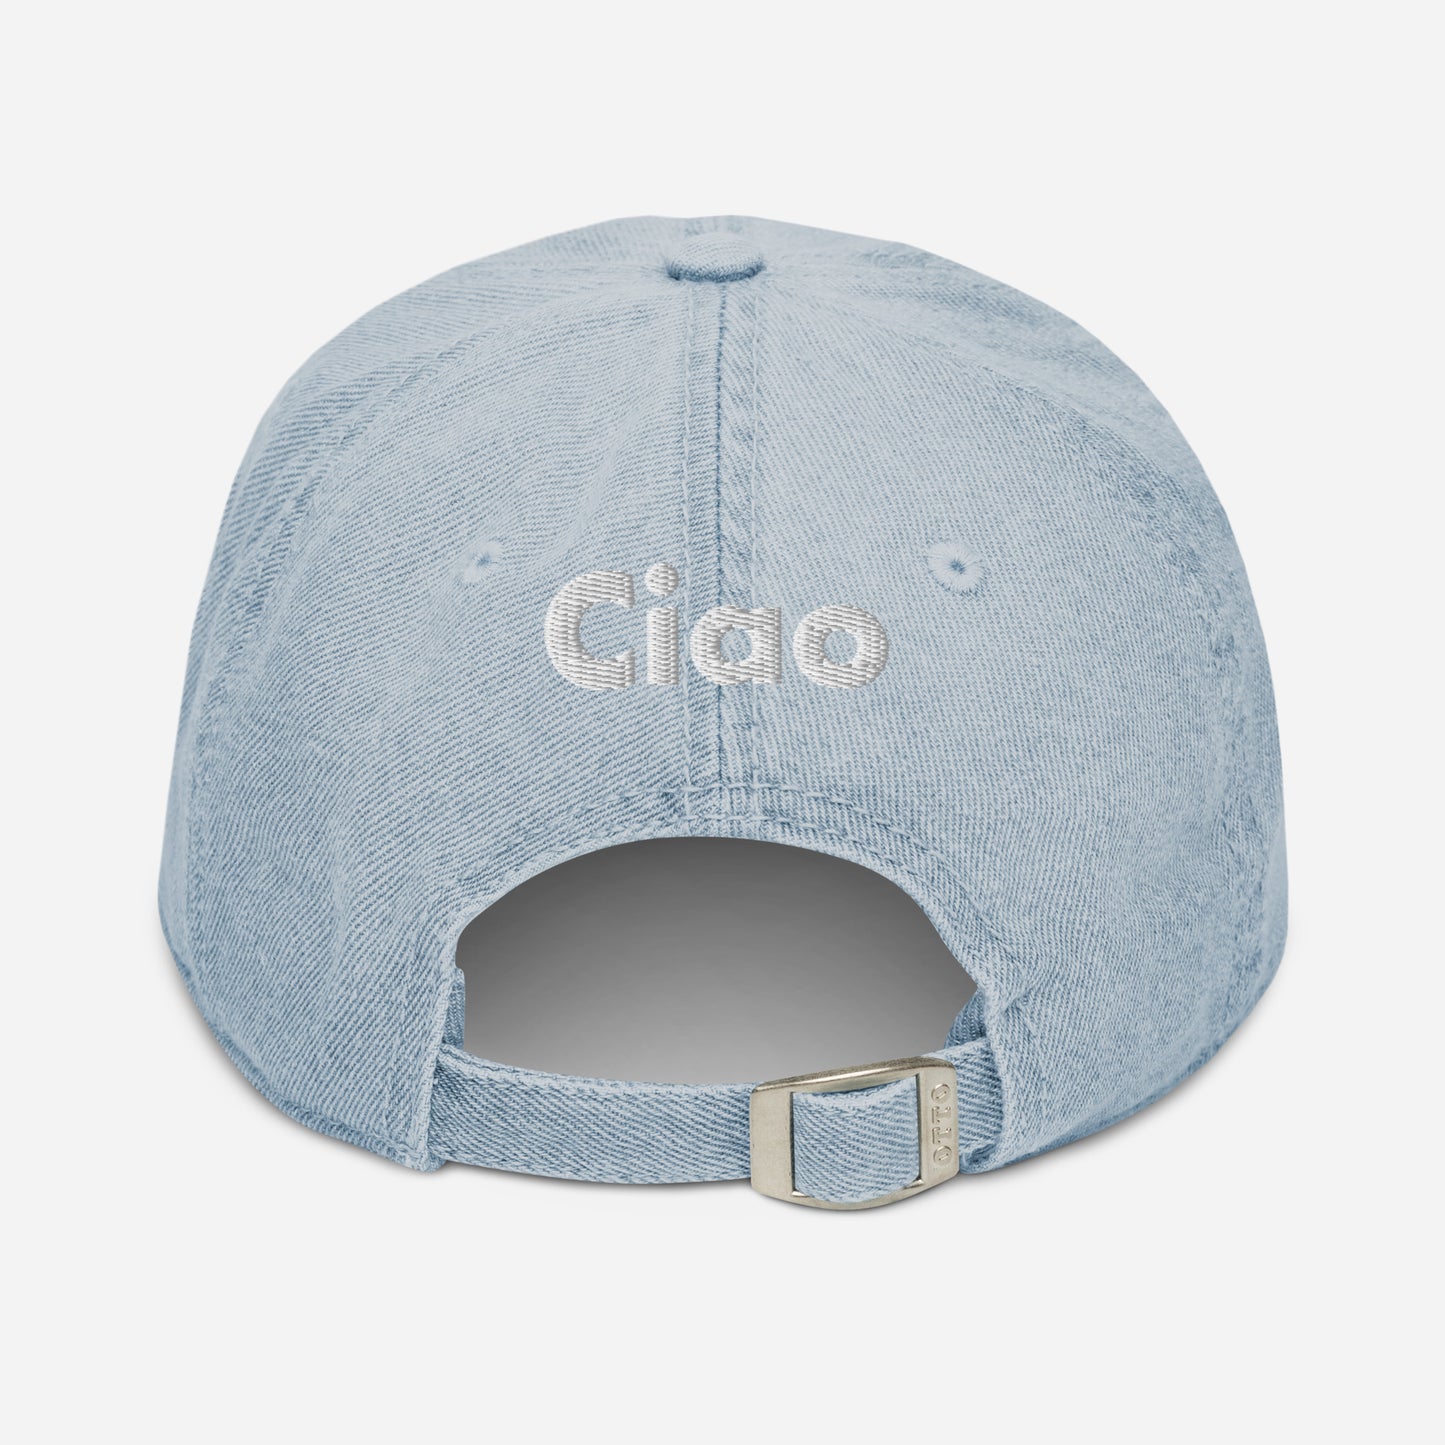 Hi Ciao Denim Hat